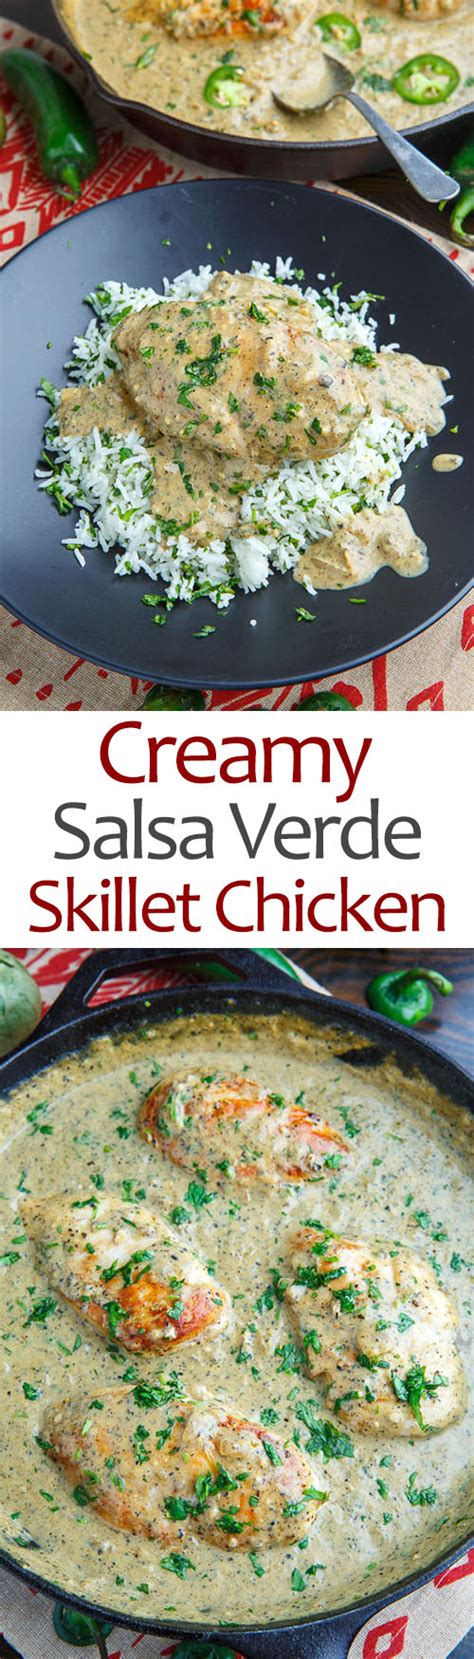 creamy-salsa-verde-skillet-chicken-closet-cooking image